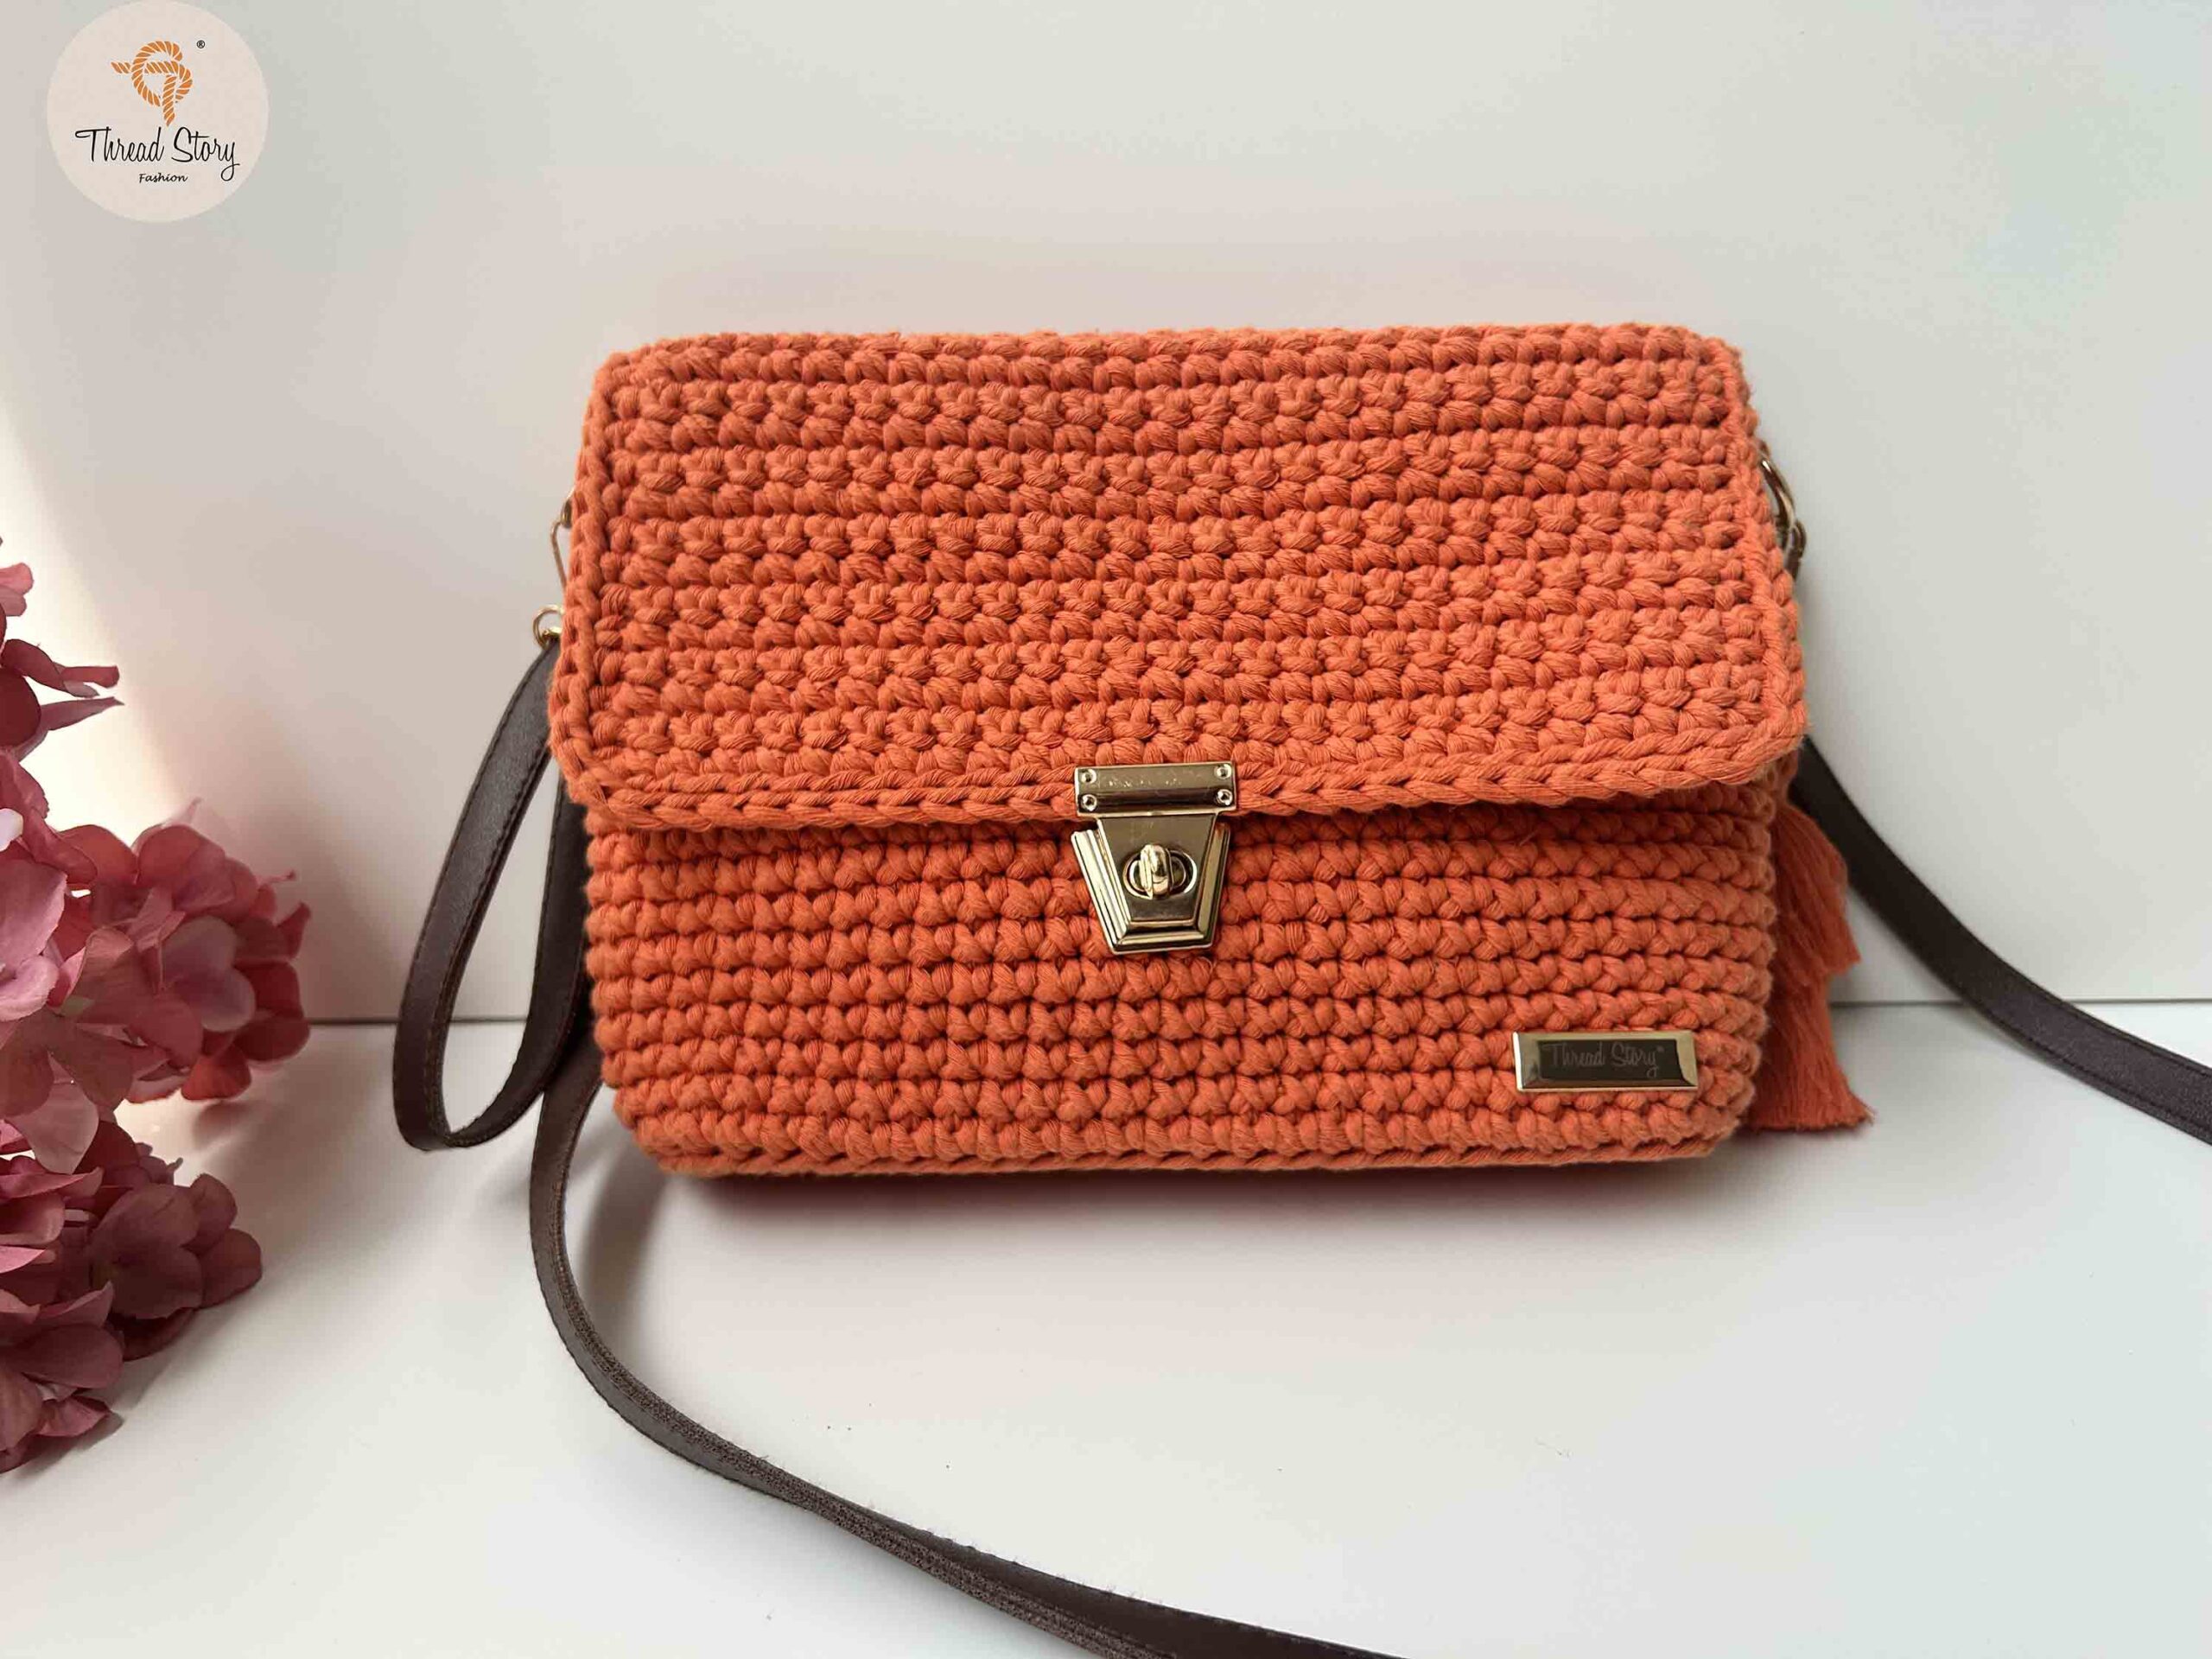 Vintage Retro Knit Macrame Shoulder Bag Red and... - Depop